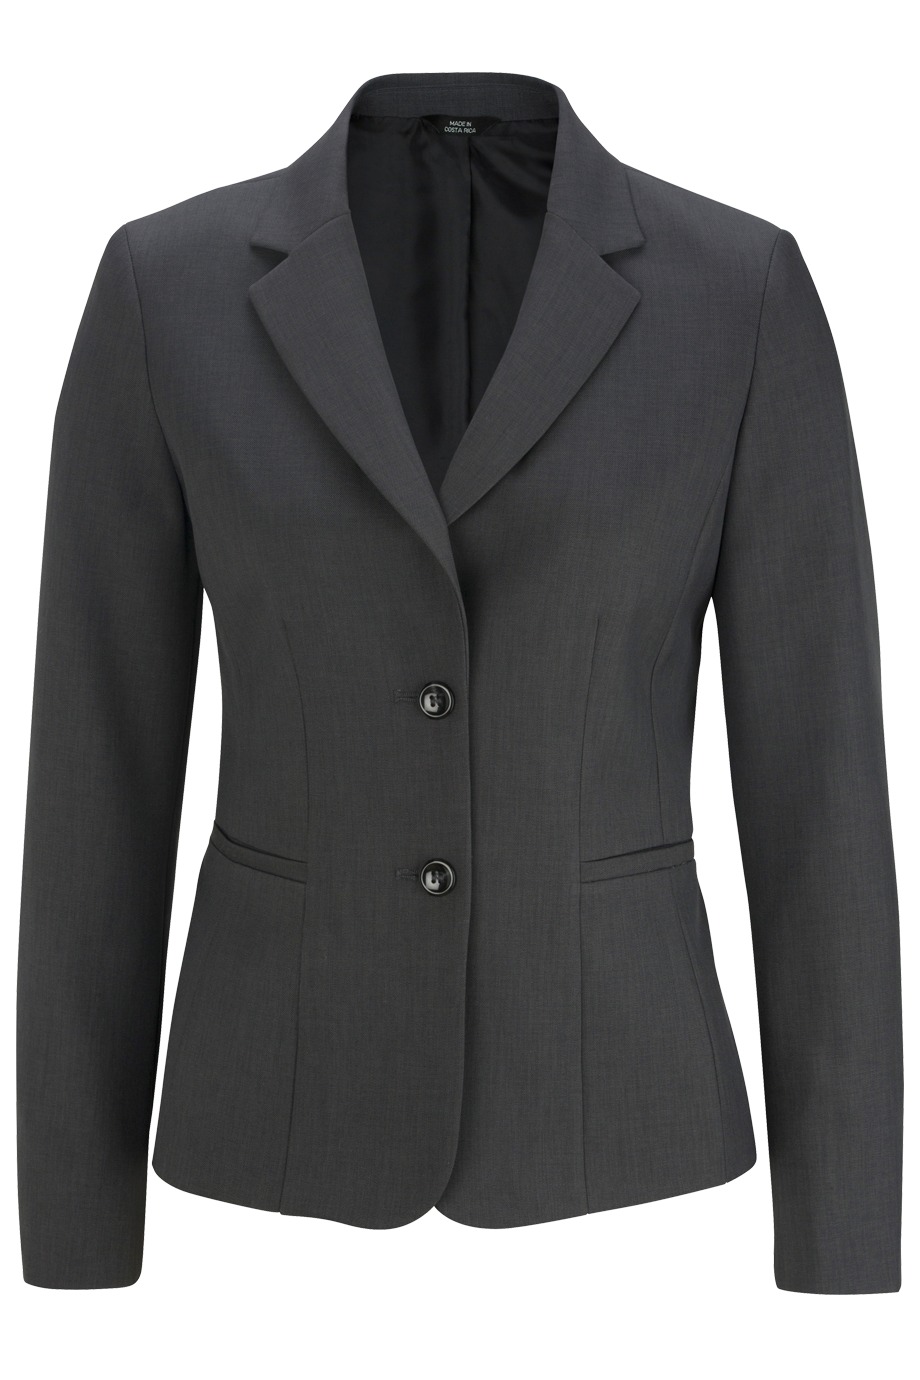 Edwards Garment 6525 - Synergy Washable Suit Coat